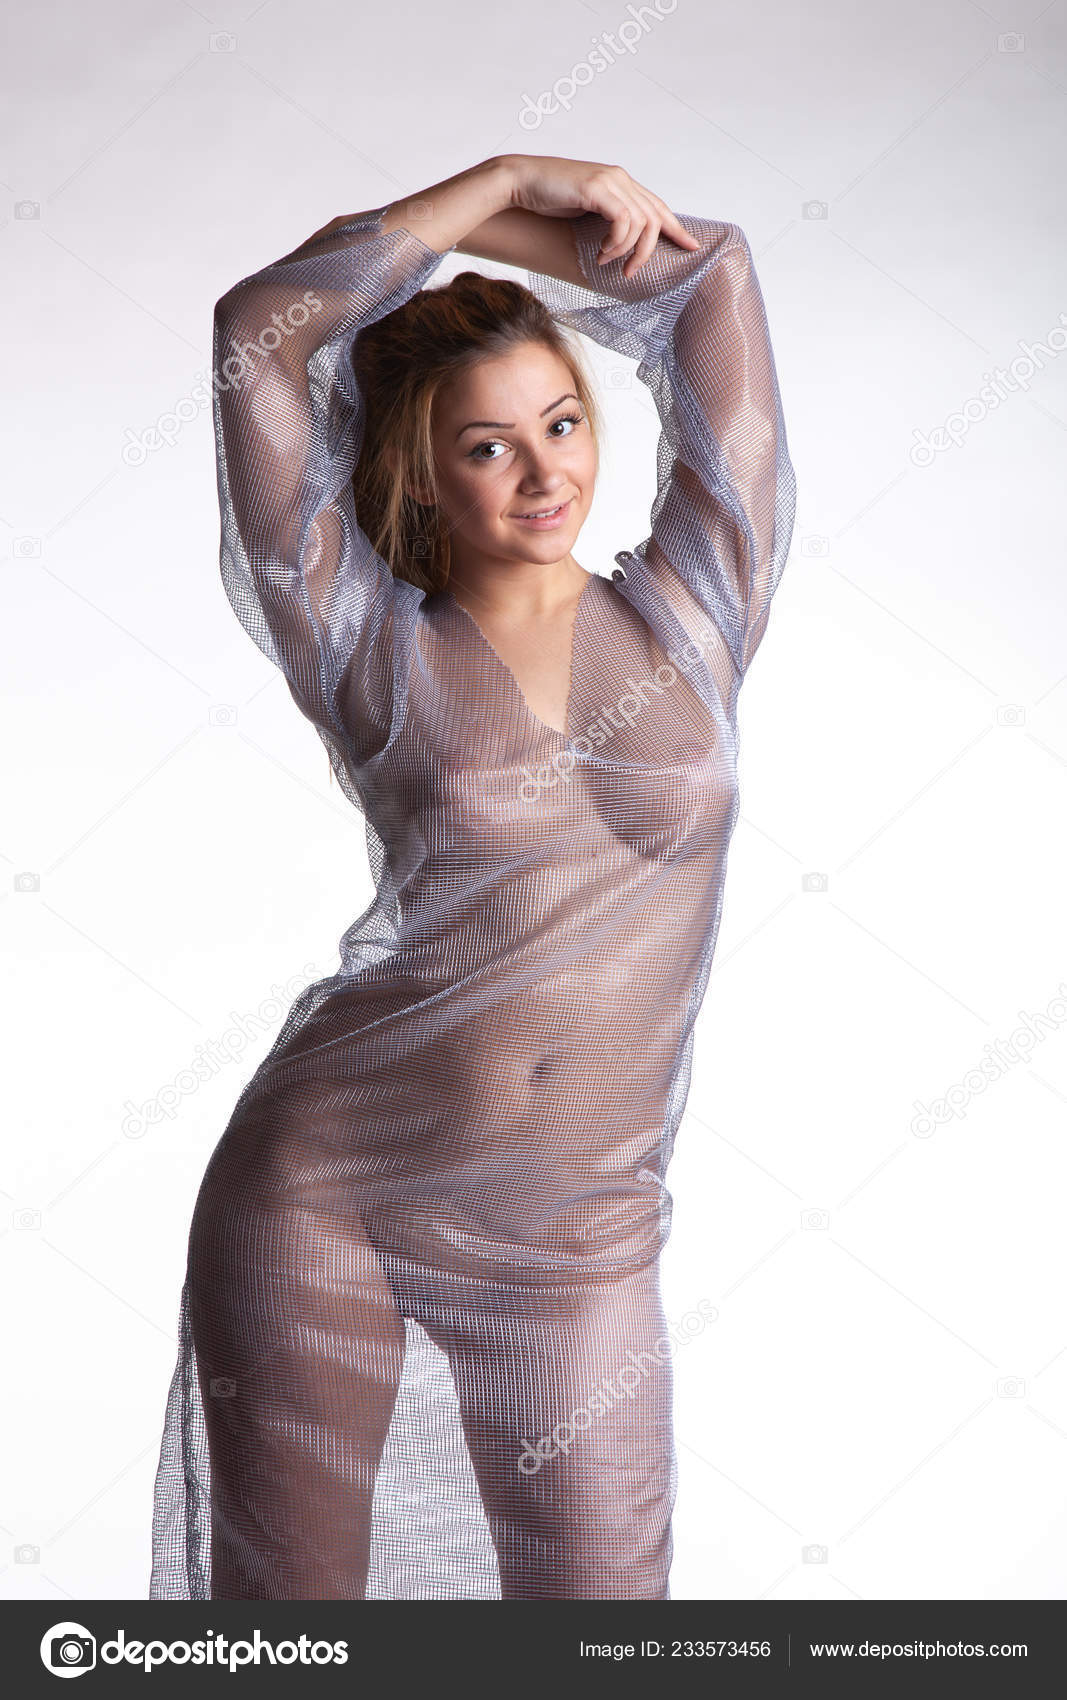 https://st4n.depositphotos.com/10086424/23357/i/1600/depositphotos_233573456-stock-photo-young-beautiful-girl-posing-nude.jpg